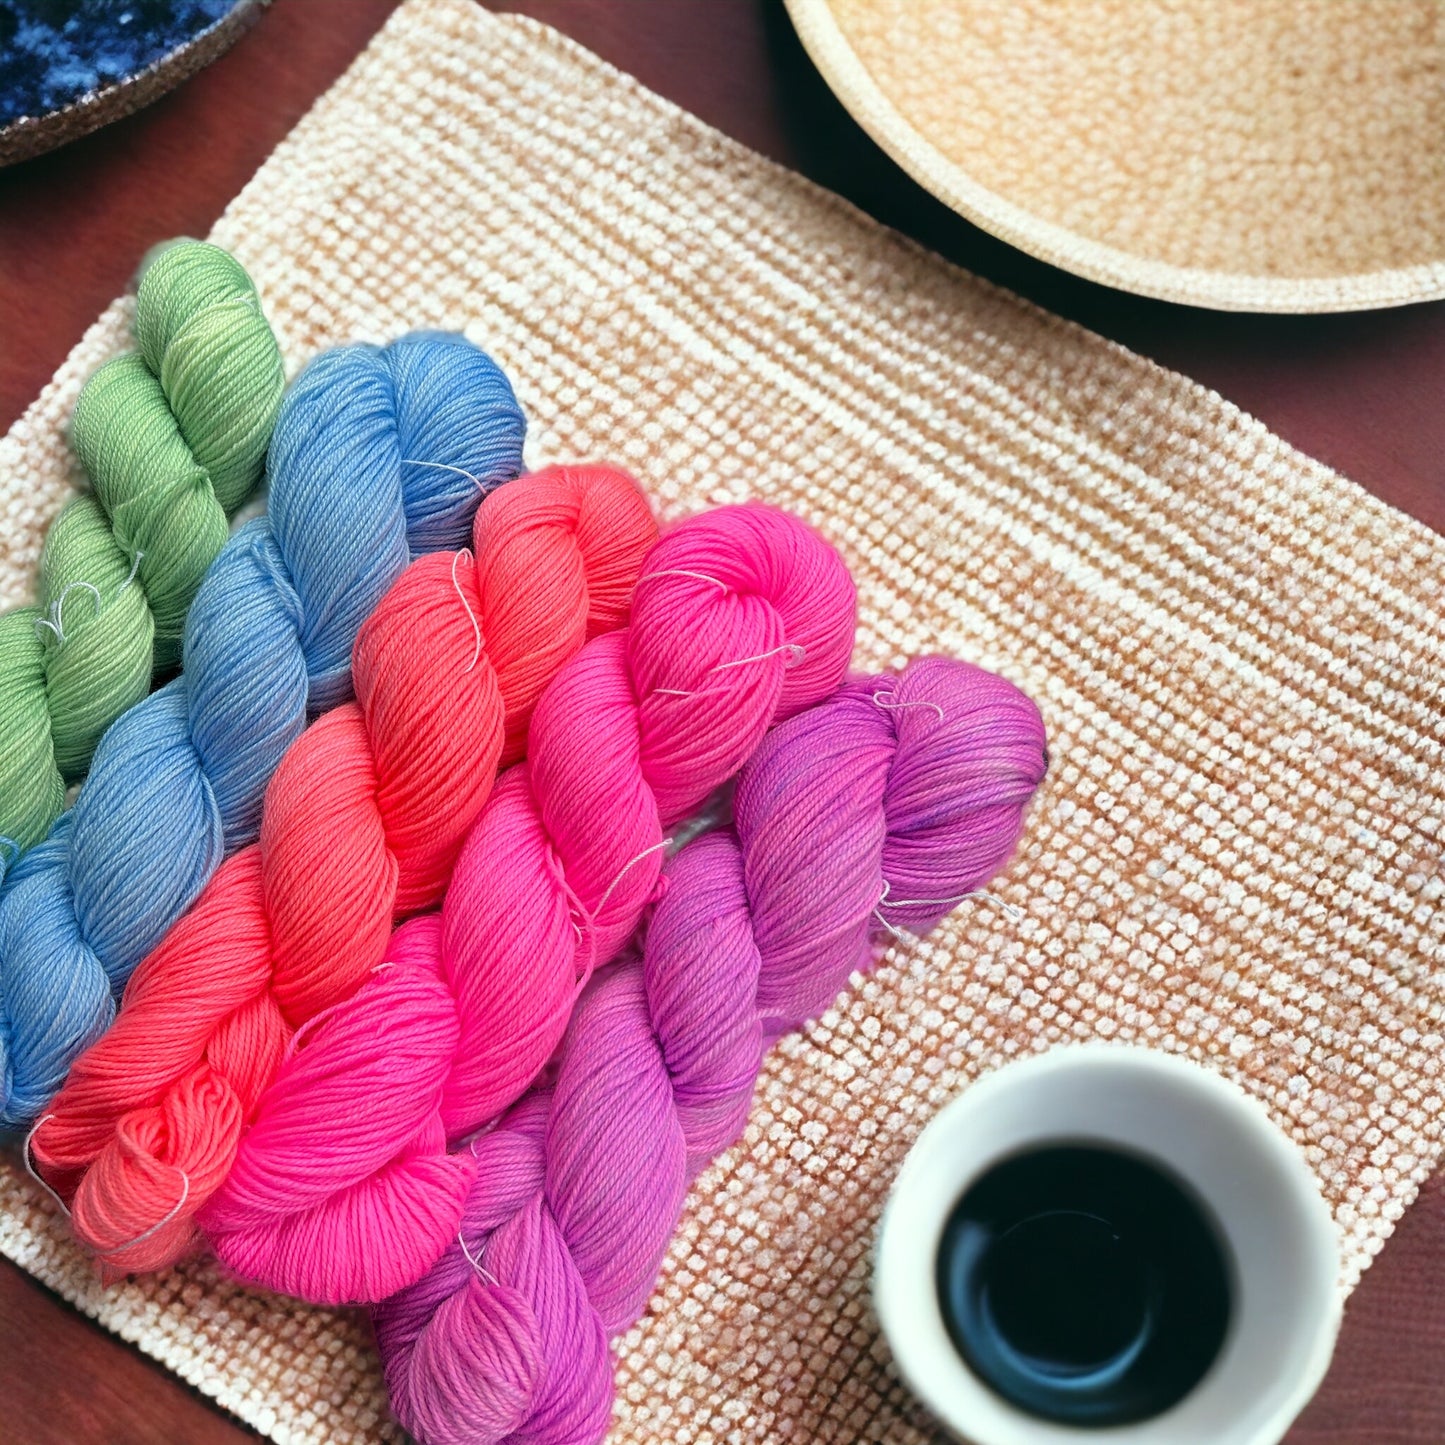 80/20 Superwash merino nylon sock yarn